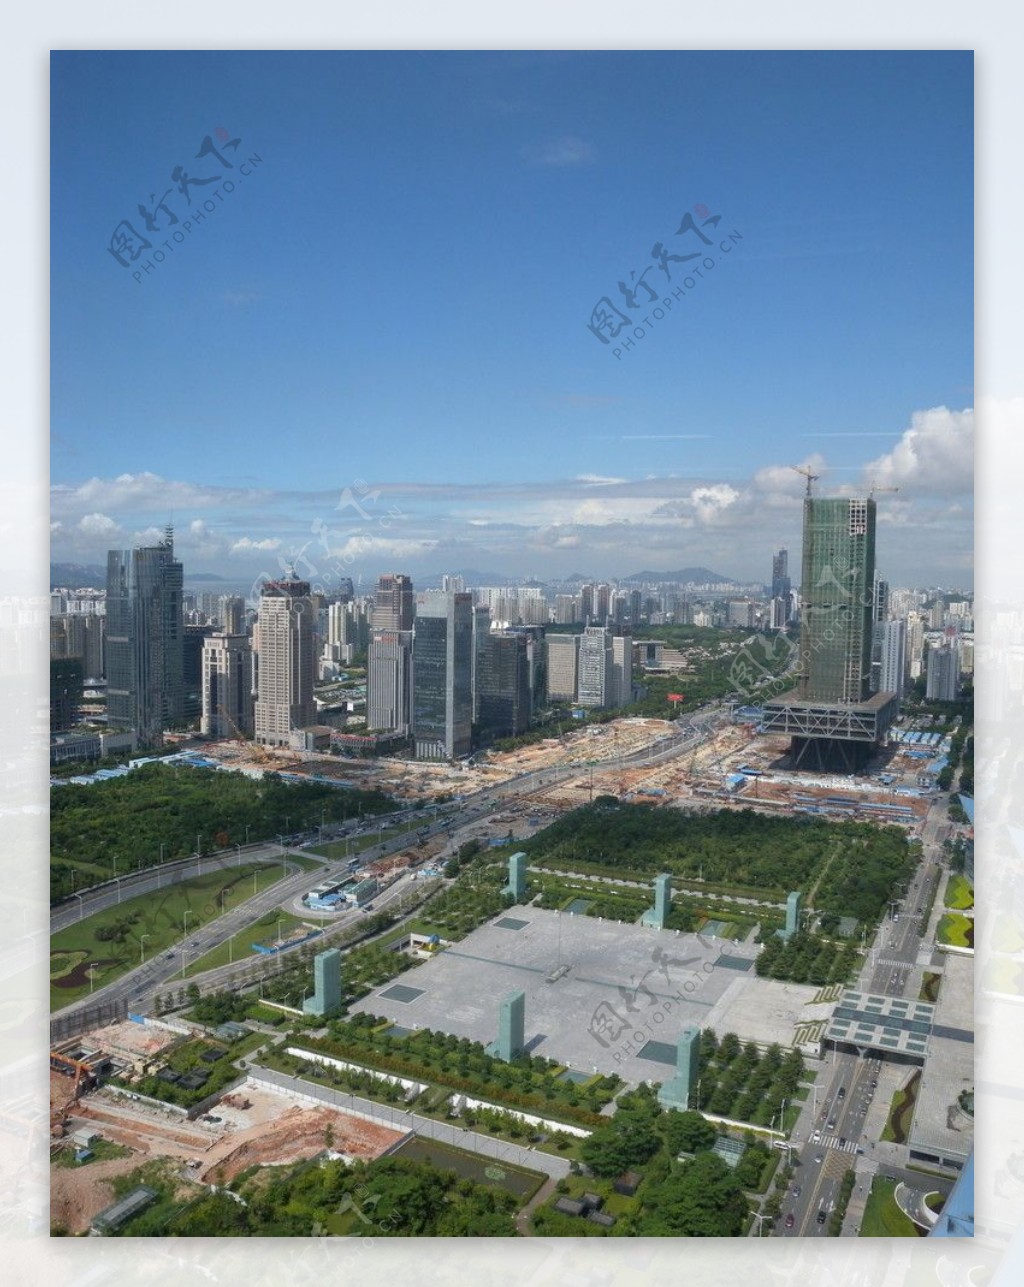 深圳CDB市民中心广场图片